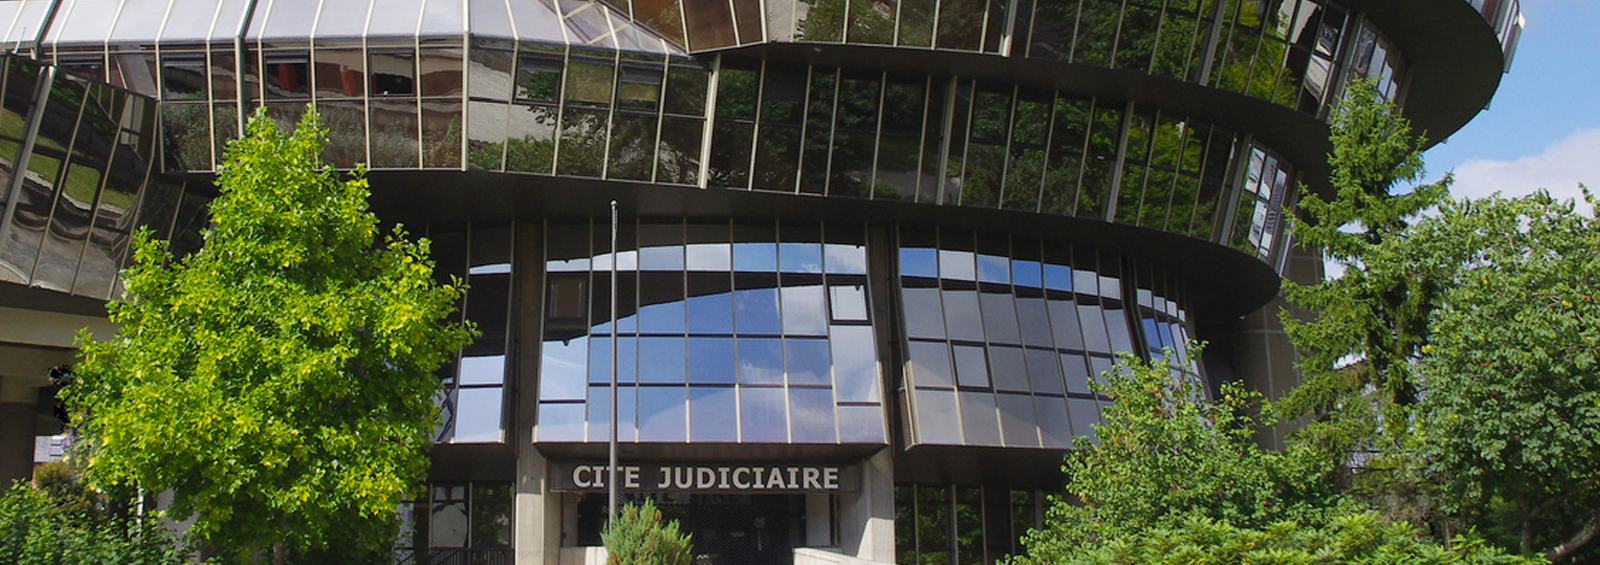 Cité Judiciaire de Rennes / Droit de la famille et droit des personnes / Cabinet Bertrand Maillard / Avocats à rennes